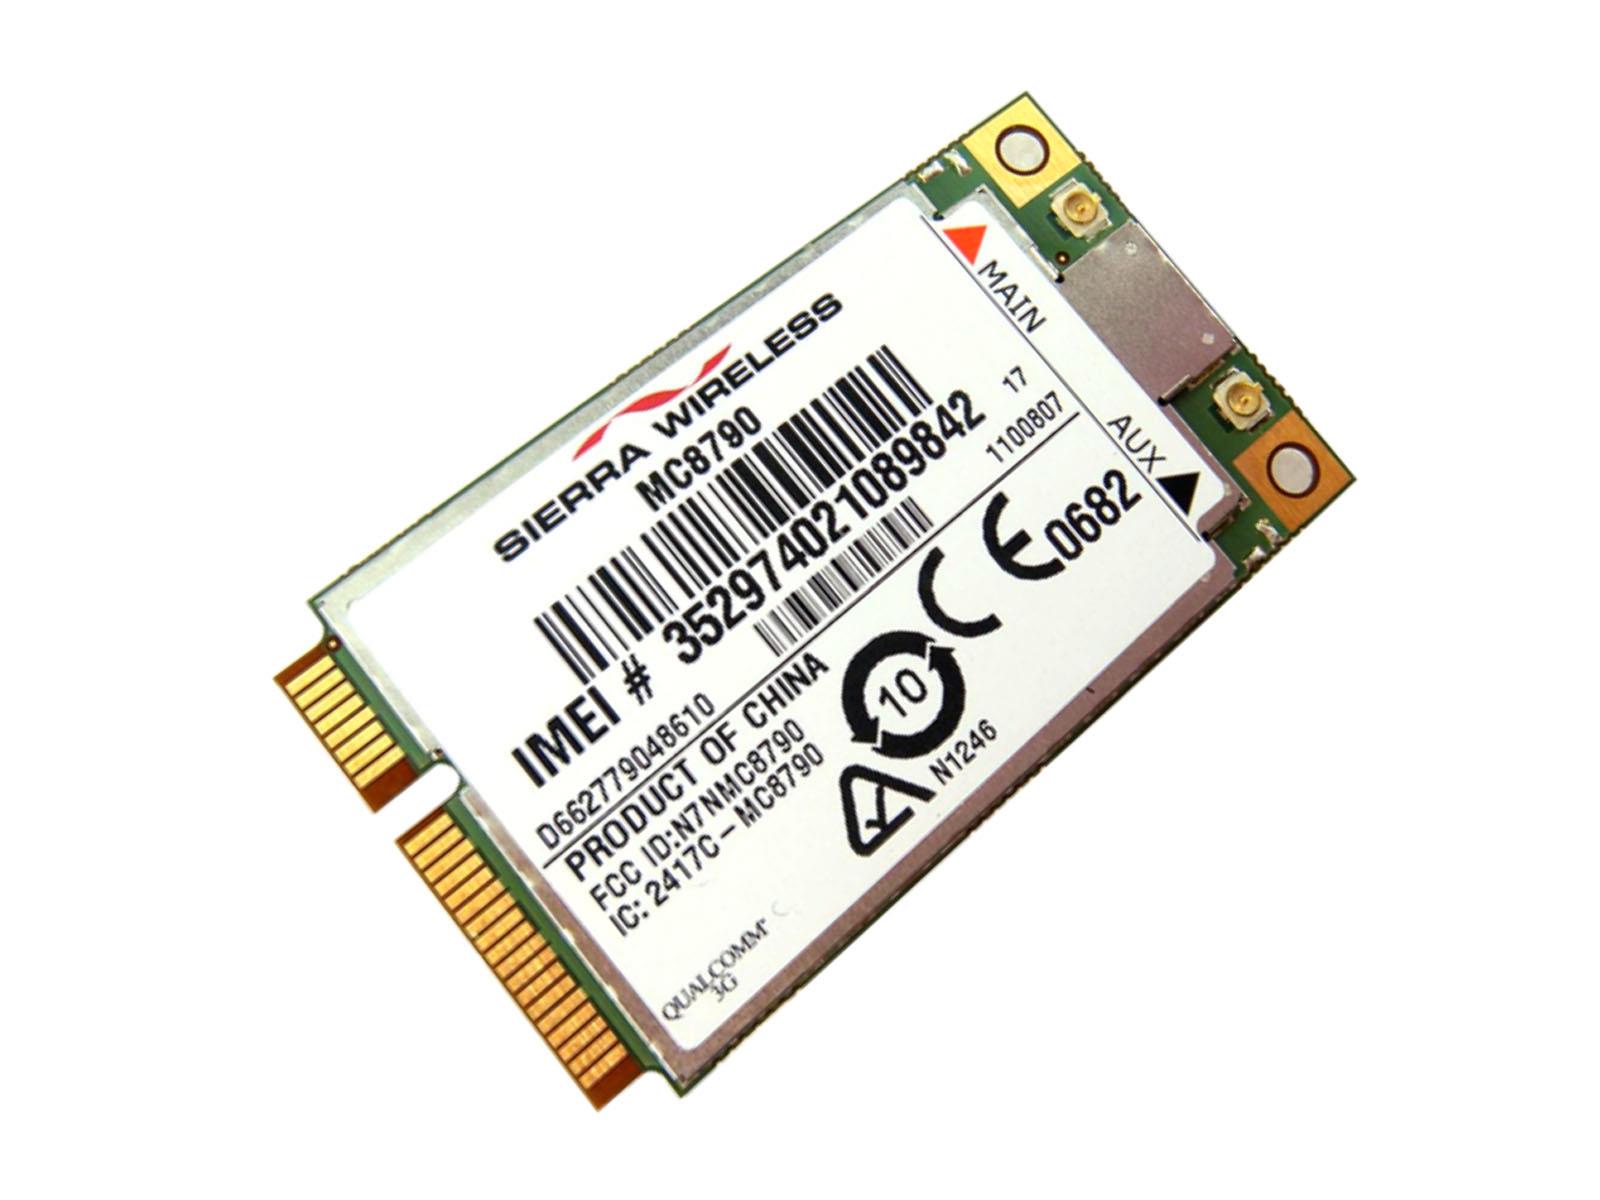 Sierra MC8790 3G card